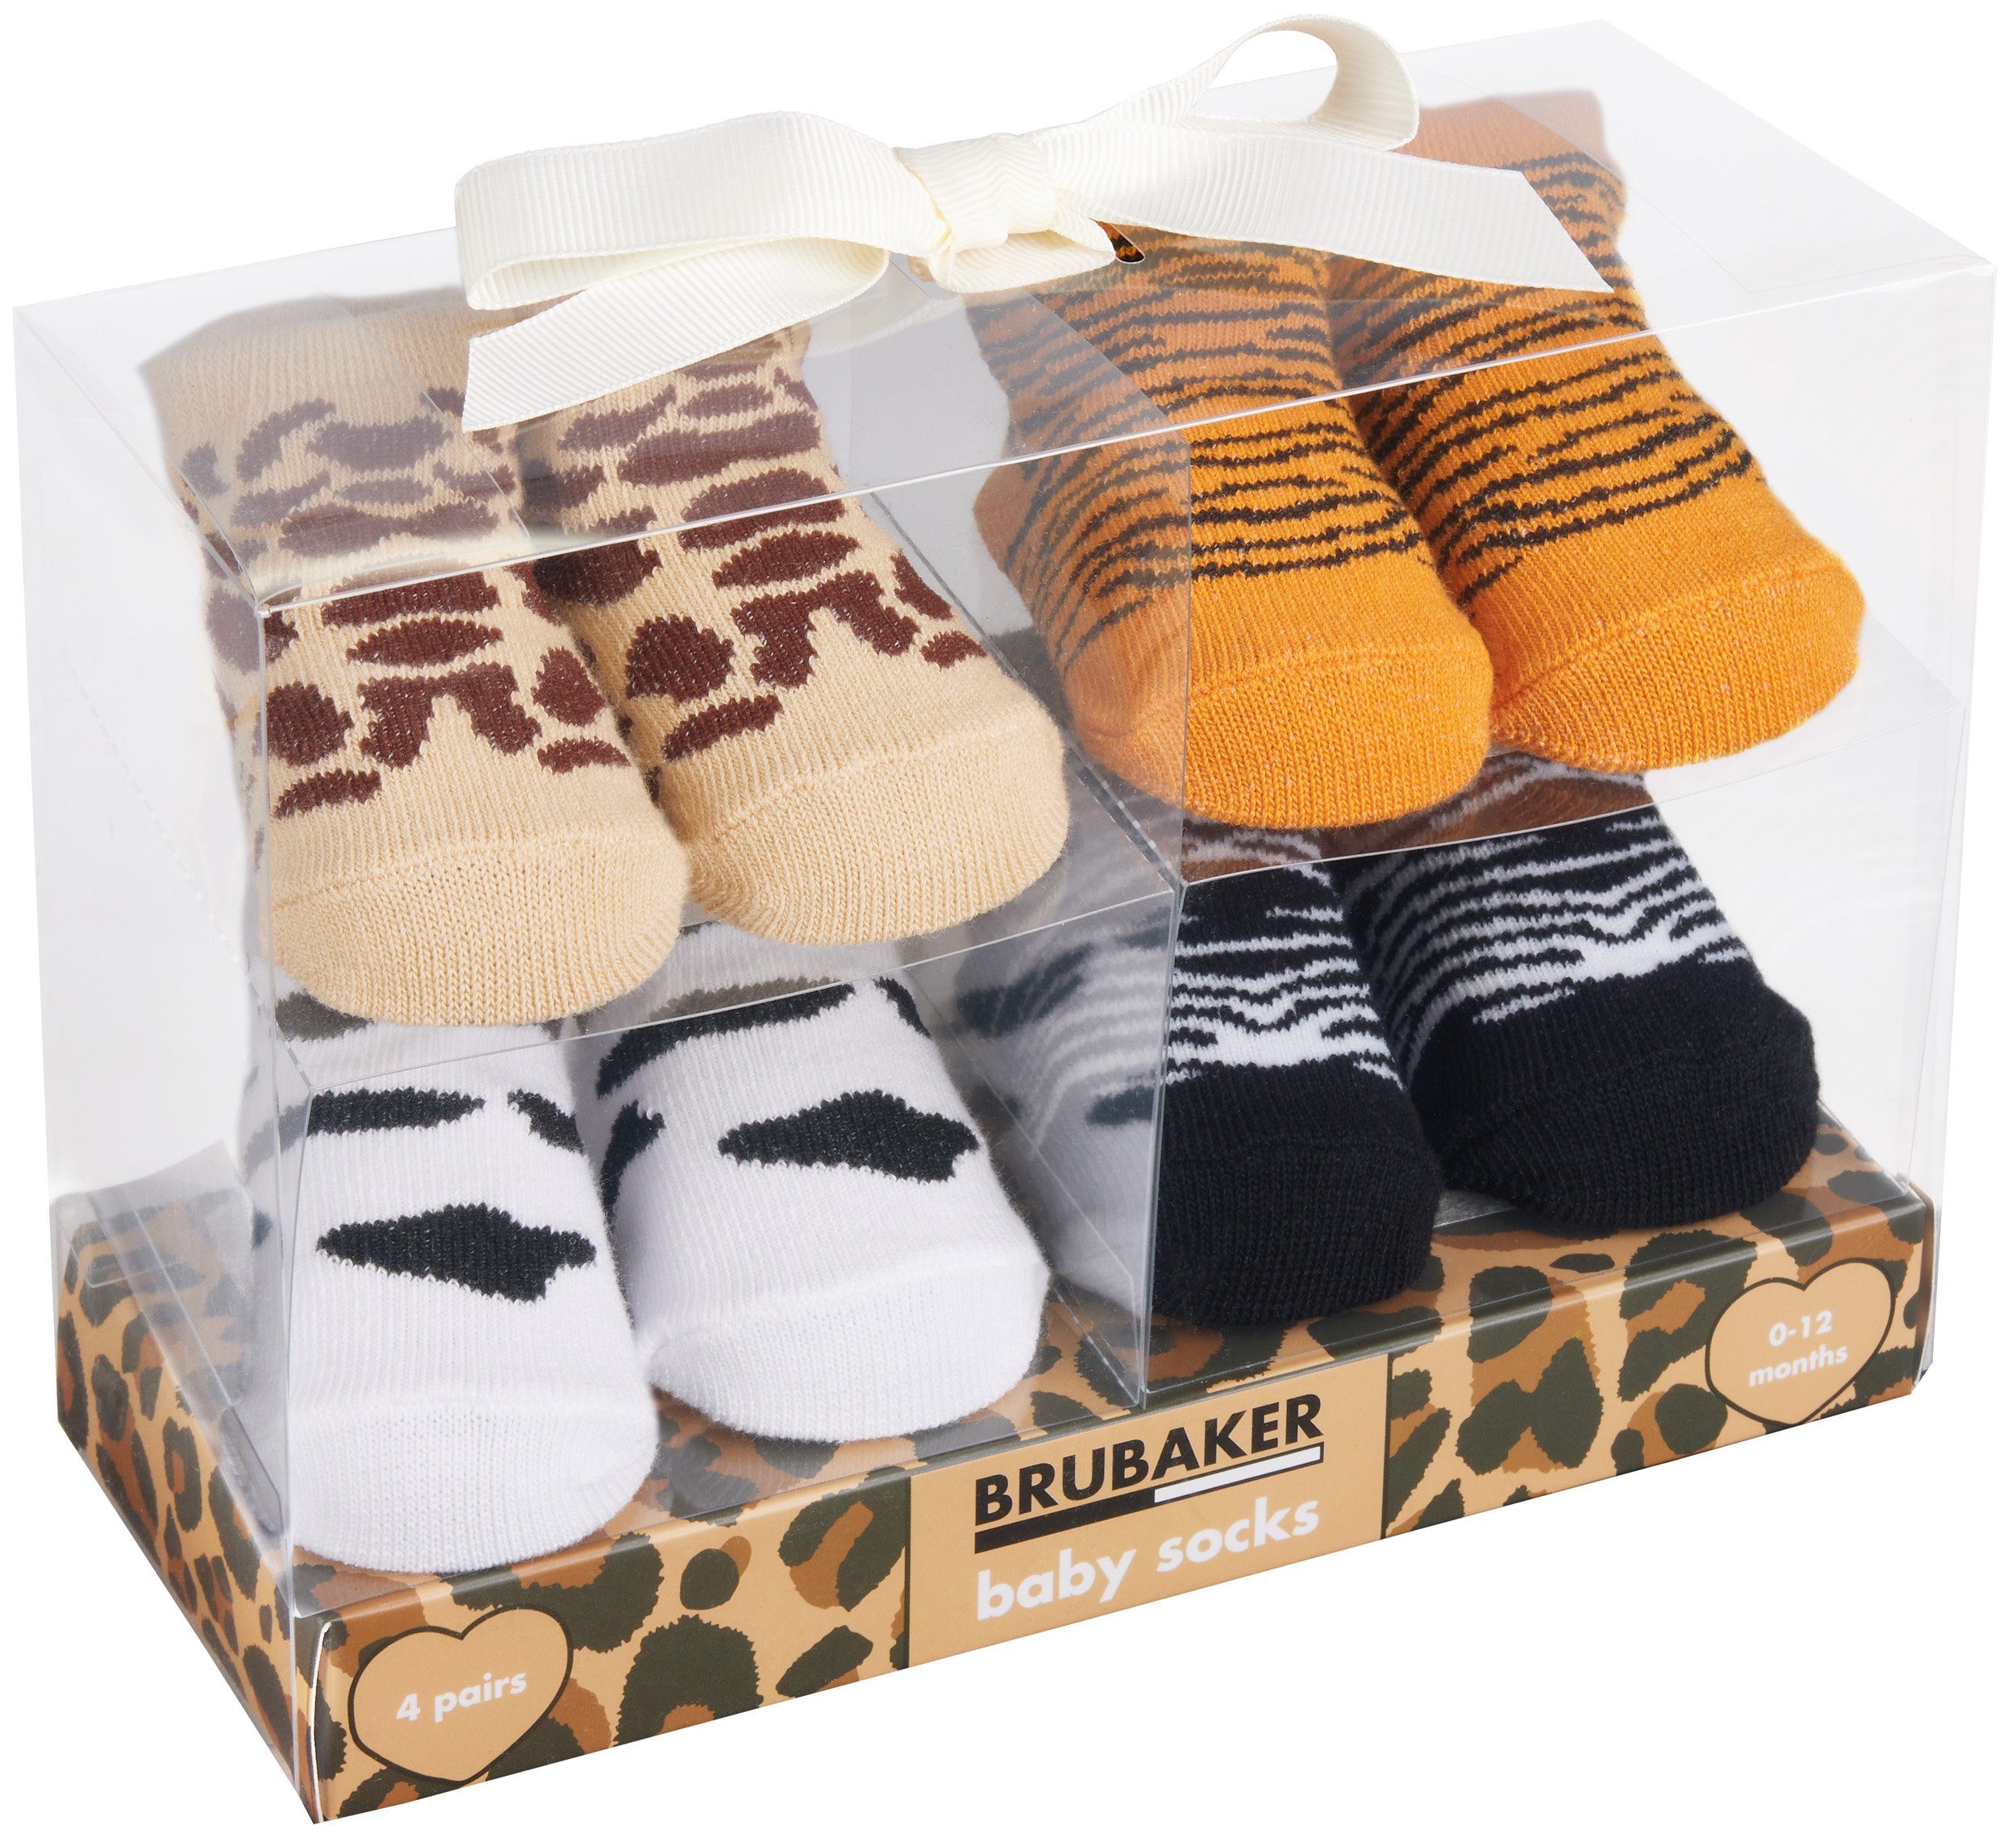 BRUBAKER Socken Babysocken für Jungen und Mädchen 0-12 Monate (4-Paar,  Baumwollsocken mit Safarimustern) Baby Geschenkset für Neugeborene in  Geschenkverpackung mit Schleife